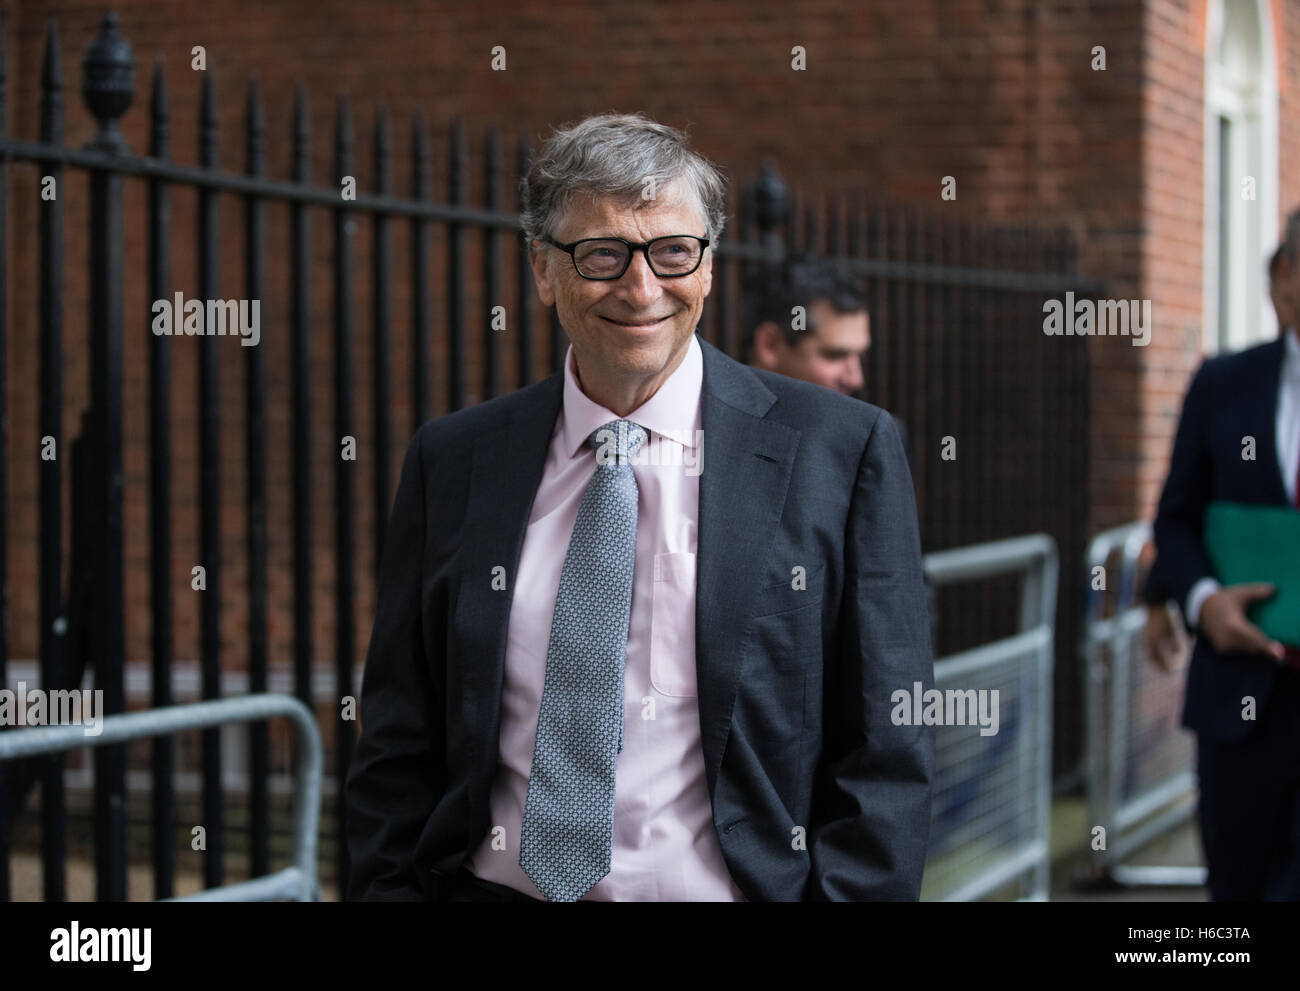 Bill Gates,millionnaire,multi philanthrope et fondateur de Microsoft, rend visite à Number 11 Downing street,London,UK Banque D'Images